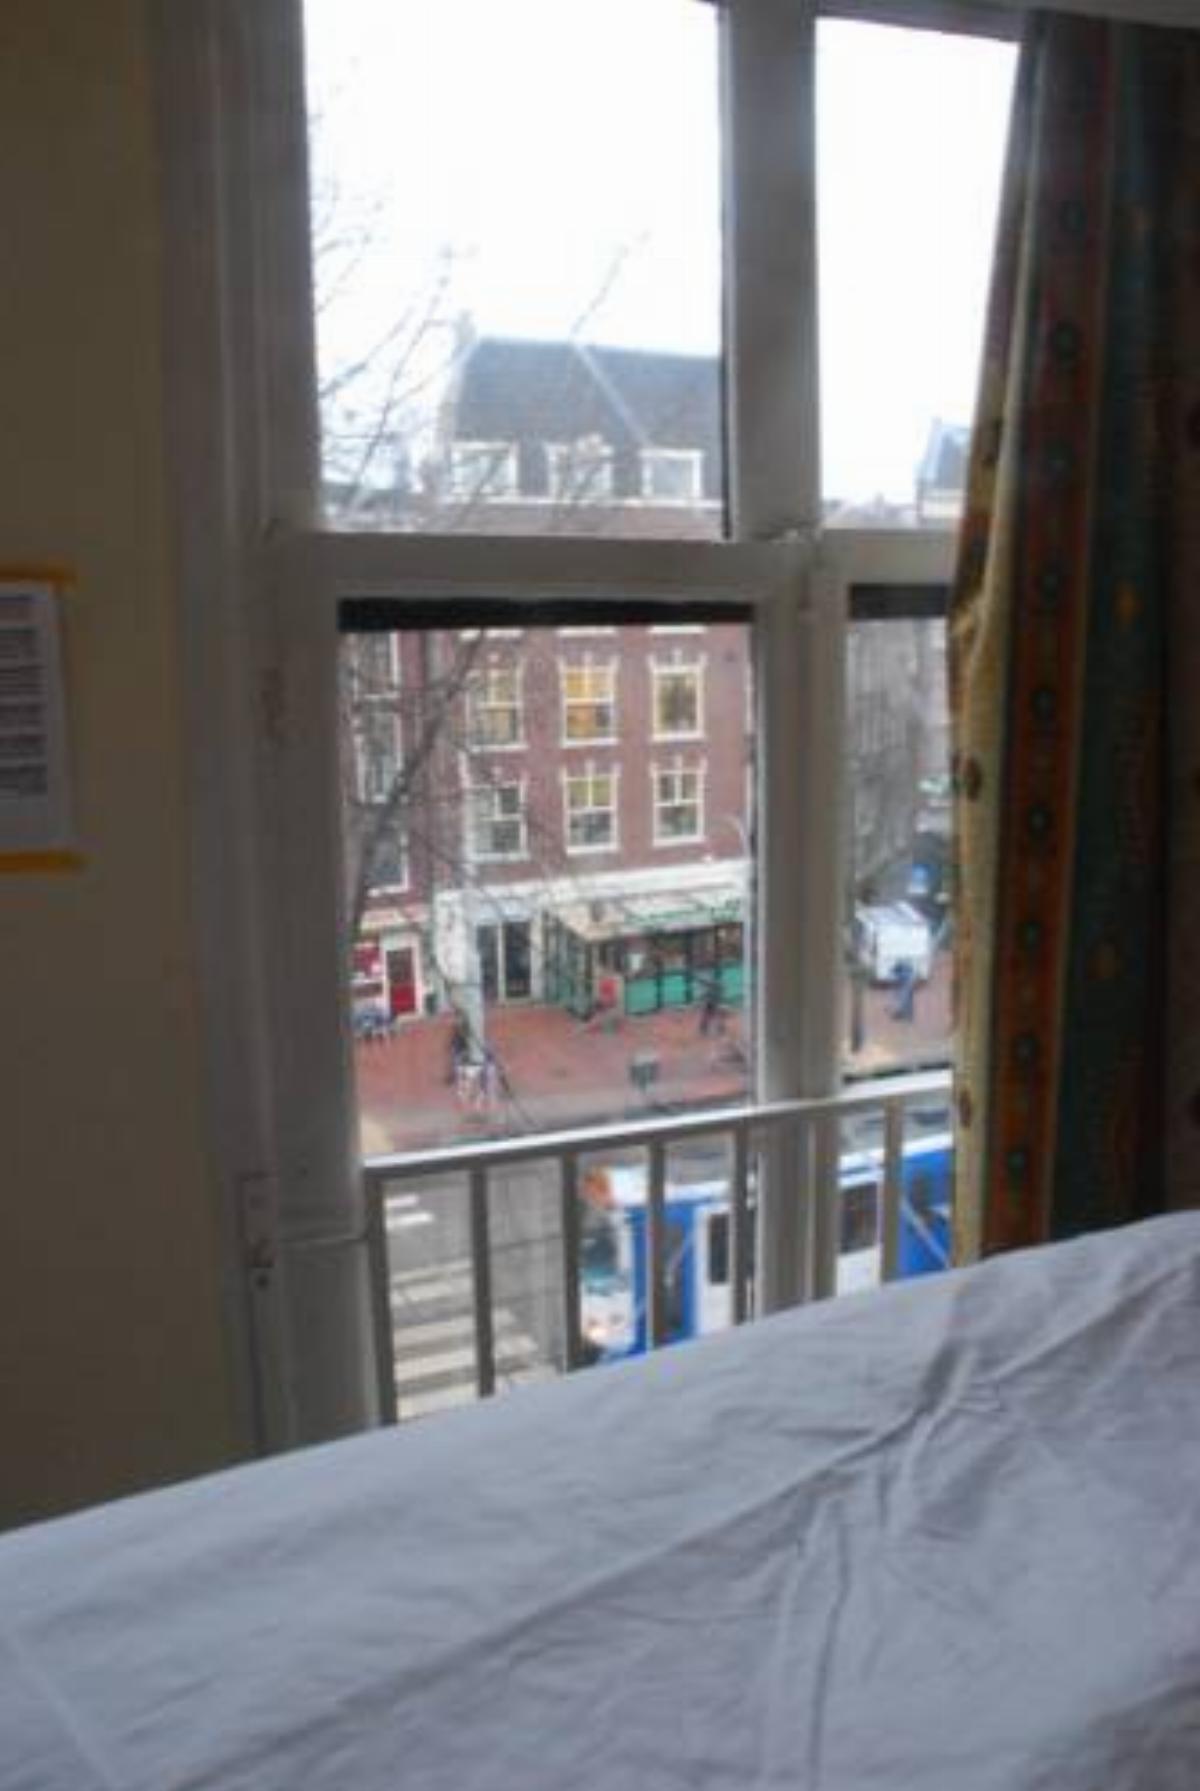 Bob's Youth Hostel Hotel Amsterdam Netherlands